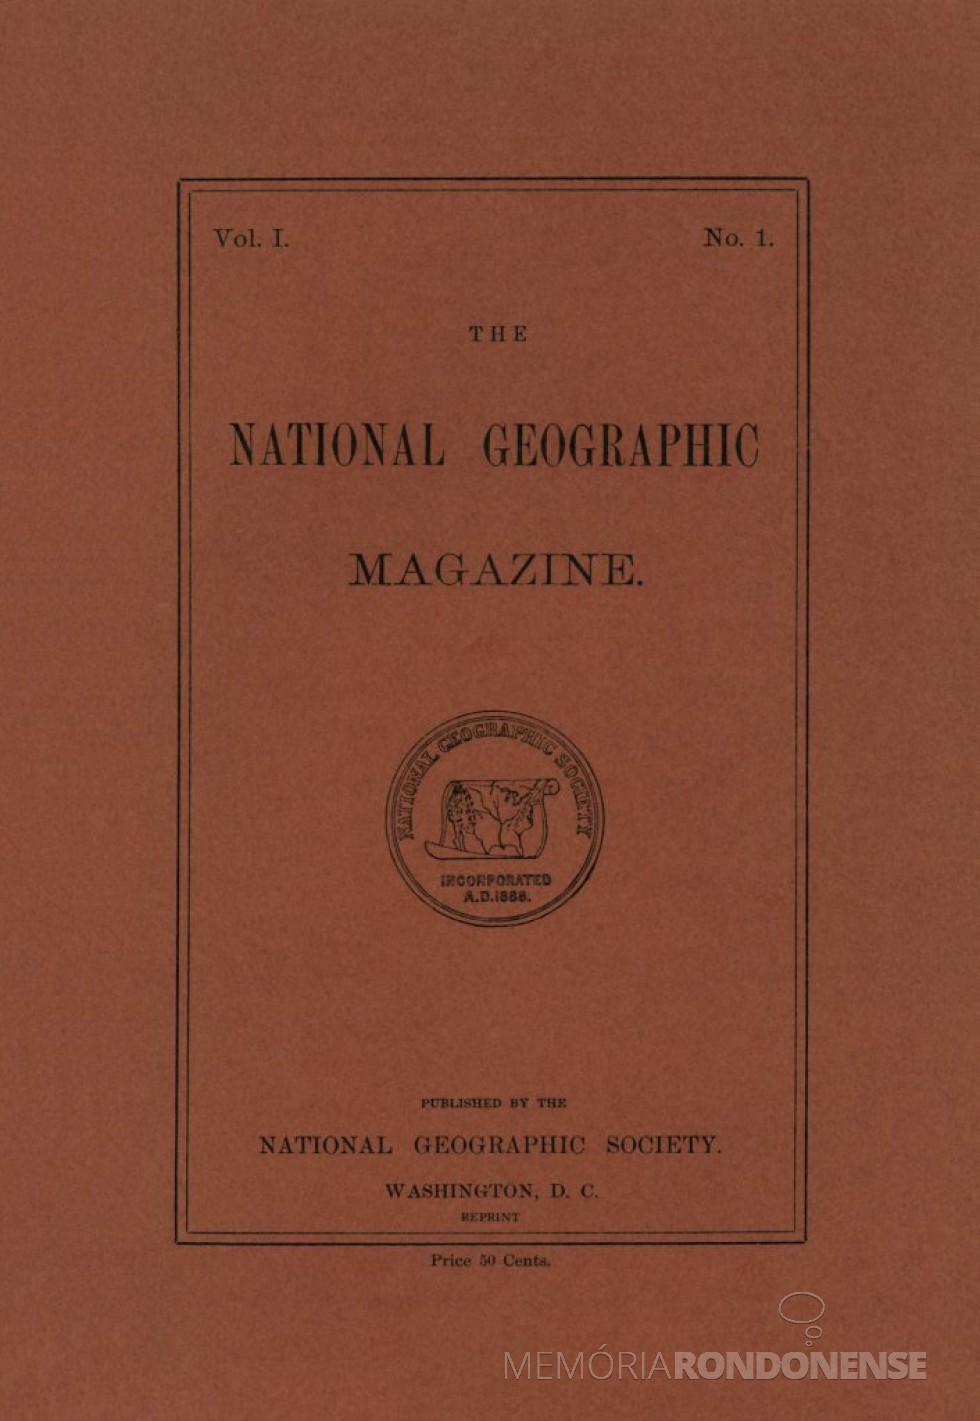 || Capa da 1ª edição da revista National Geographich Magazine que circulou em outubro de 1888.
Imagem: Acervo National Geographic Society - FOTO 2 - 